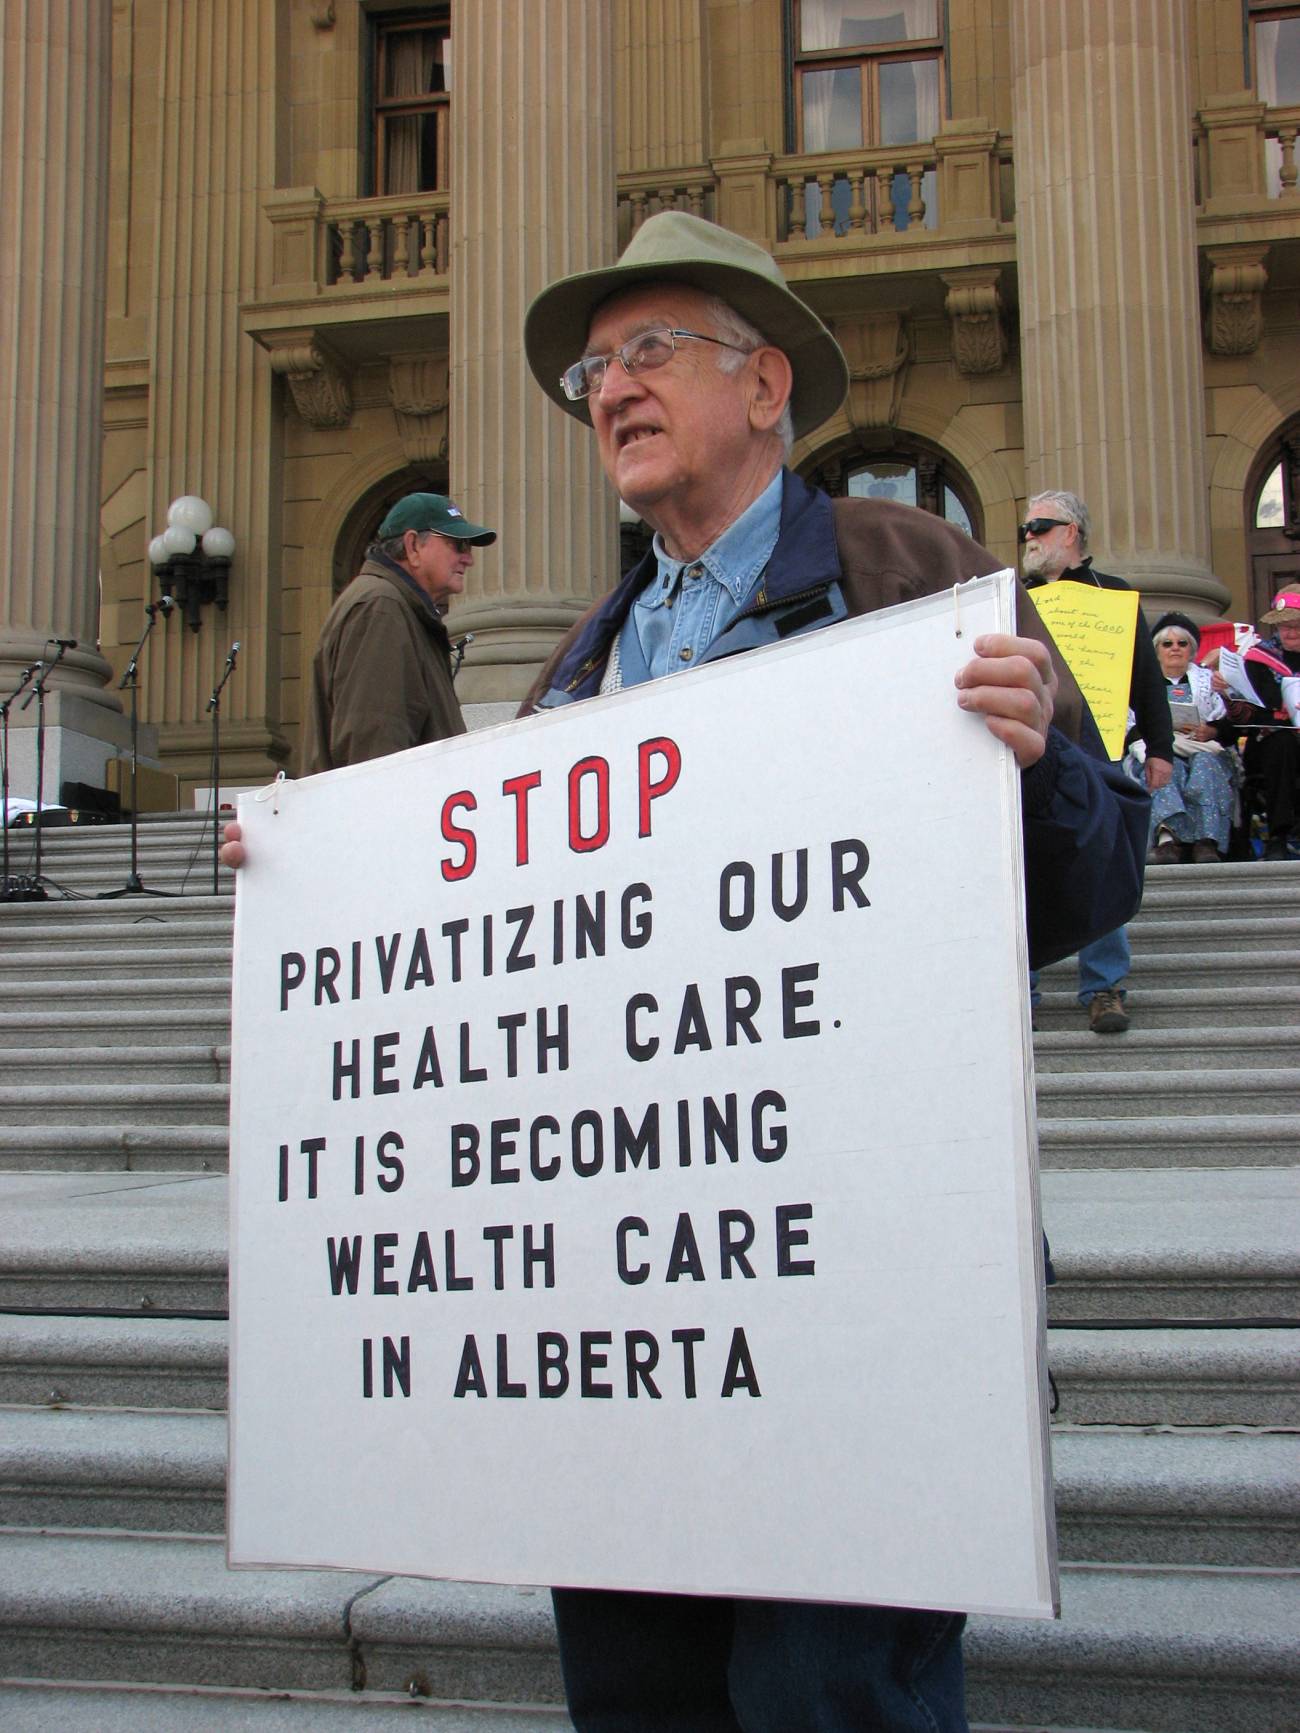 En la imagen, una manifestación a favor del Medicare, el programa de seguro de salud del gobierno norteamericano para personas mayores de 65 años.